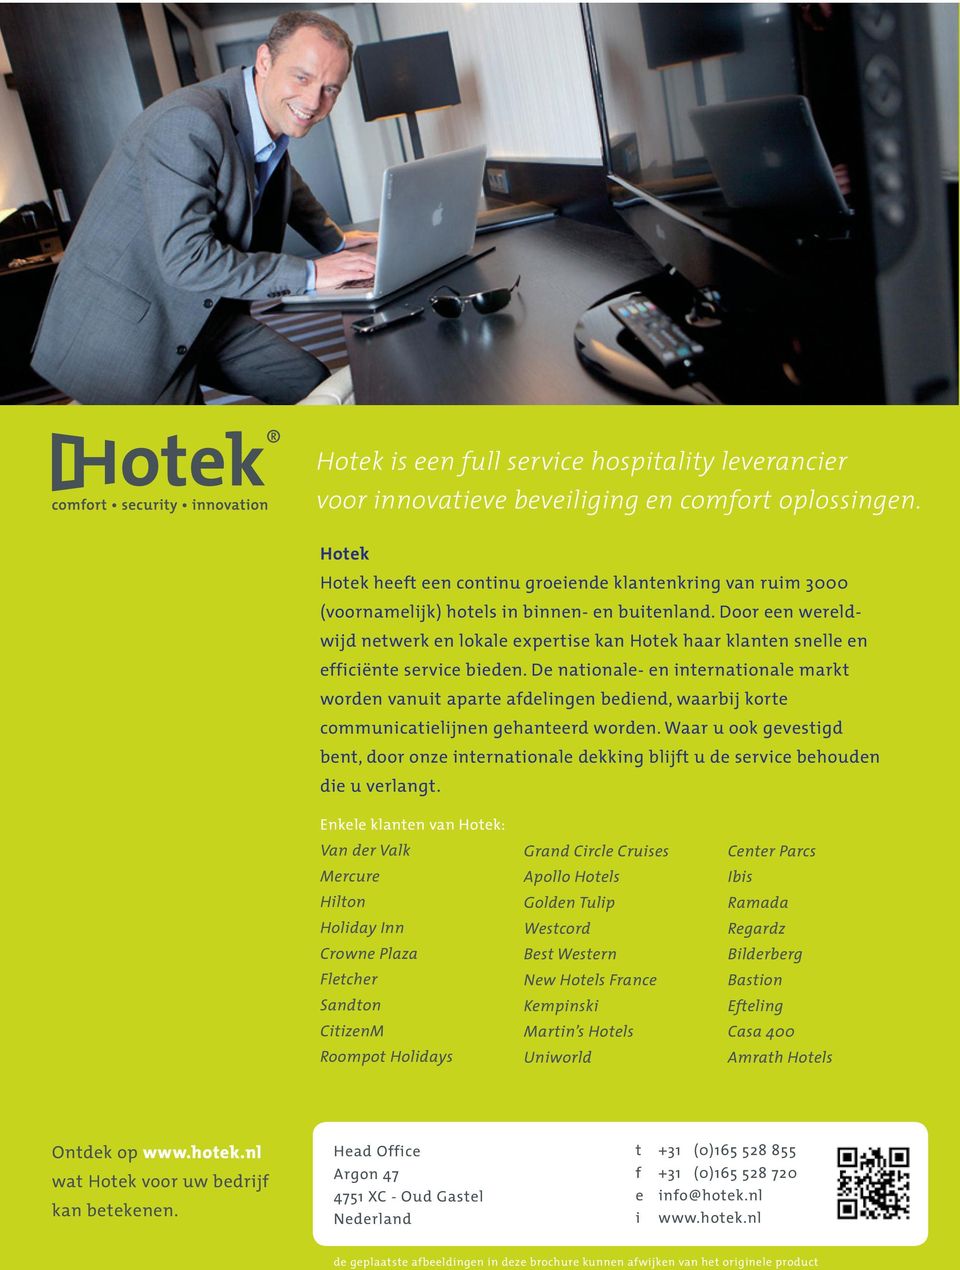 Door een wereldwijd netwerk en lokale expertise kan Hotek haar klanten snelle en efficiënte service bieden.